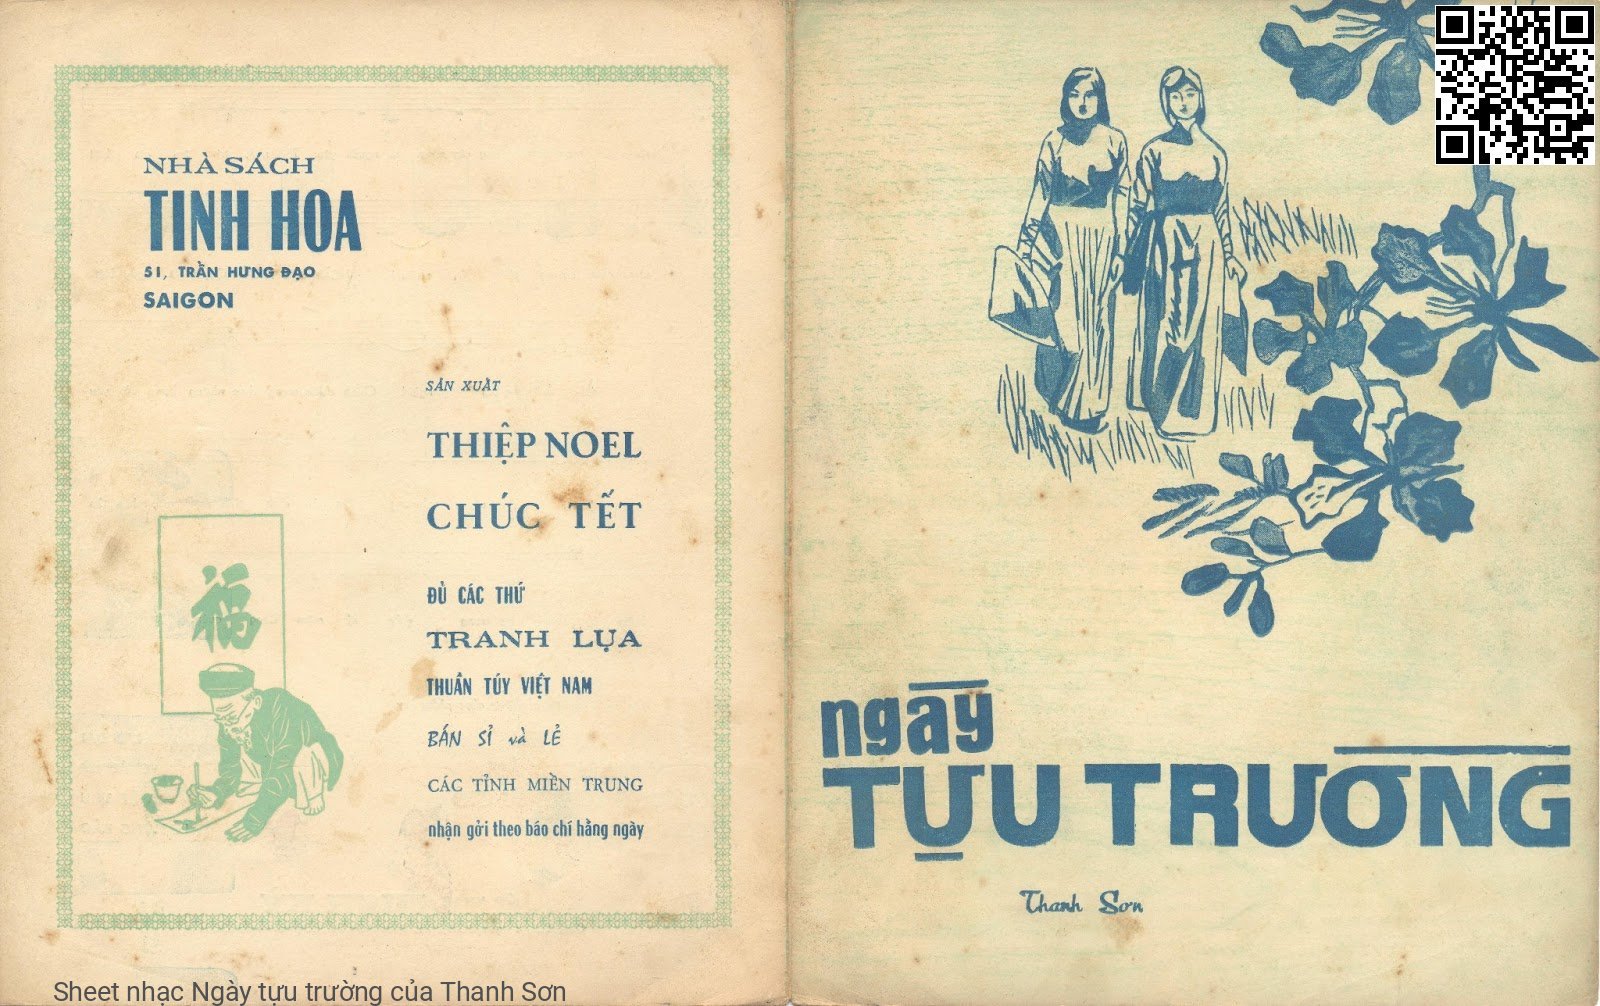 Sheet nhạc Ngày tựu trường - Thanh Sơn